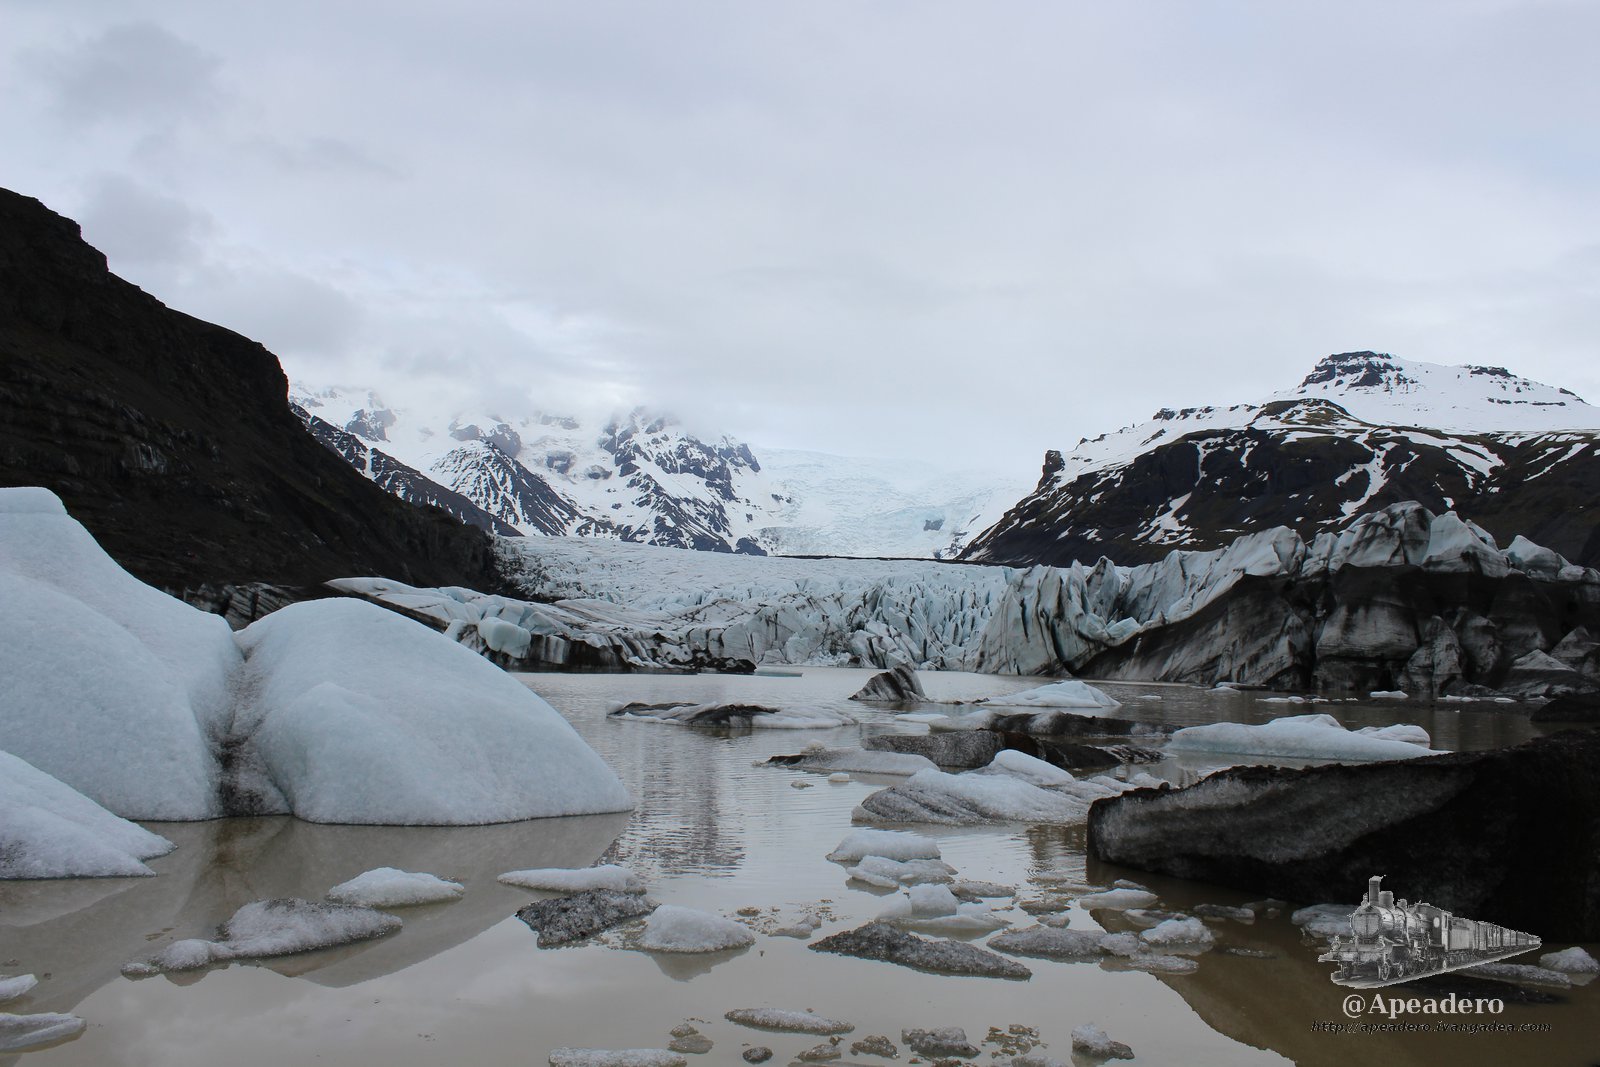 El frente del glaciar es como el Jokulsarlon pero de color marrón caca. Hay mucho barro y el mar está lejos.